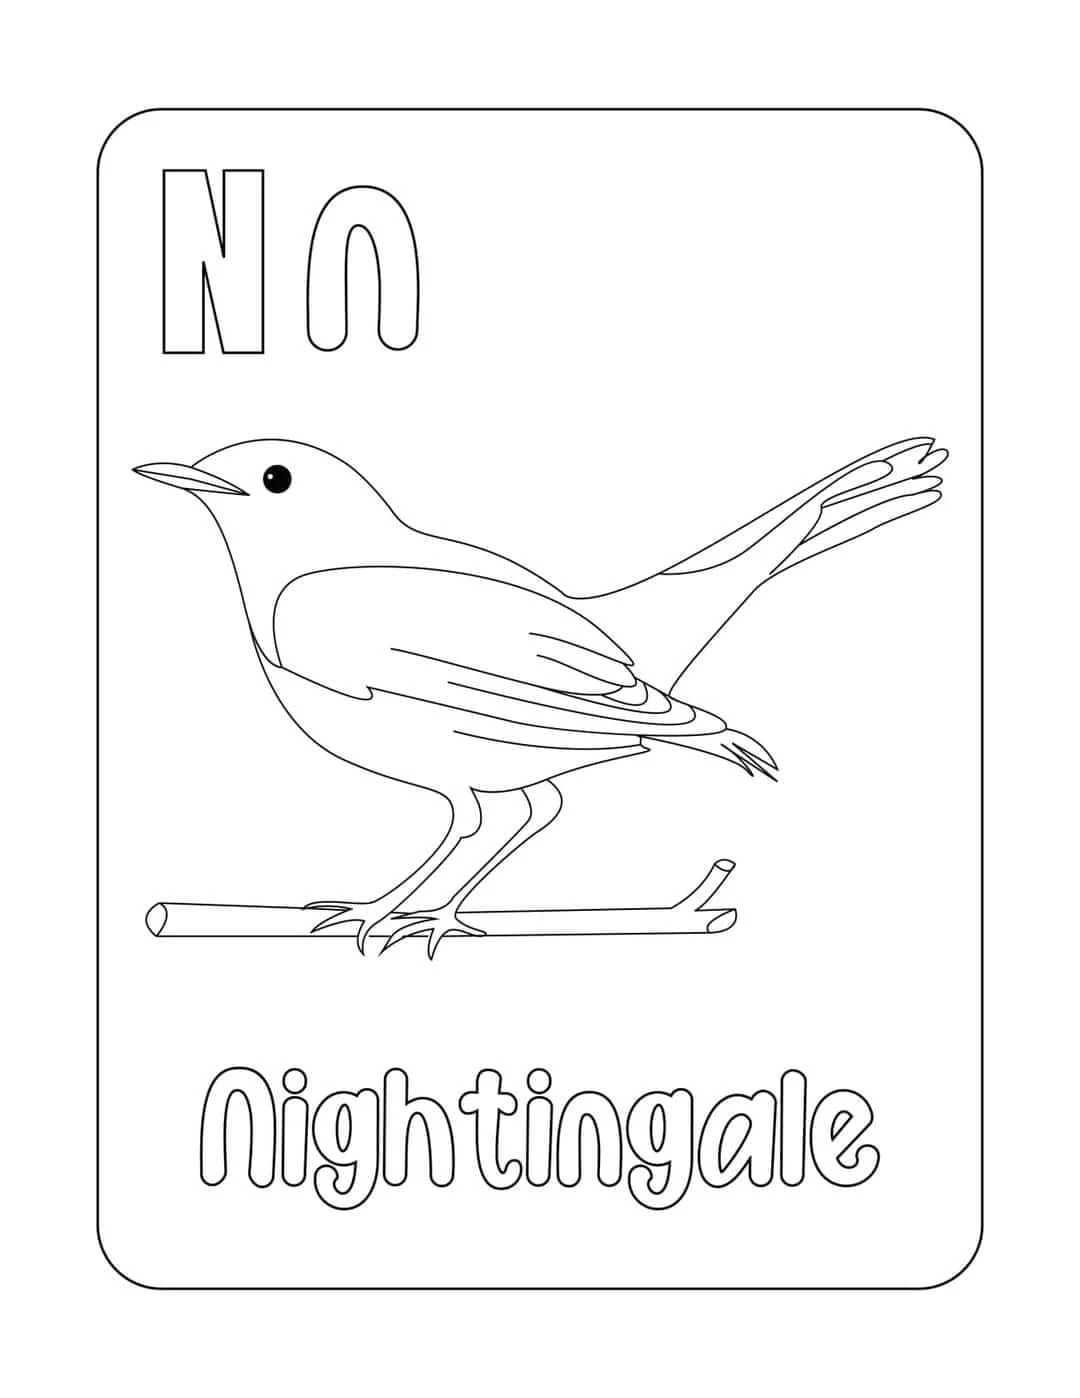 Tranh tô màu con (Nightingale)